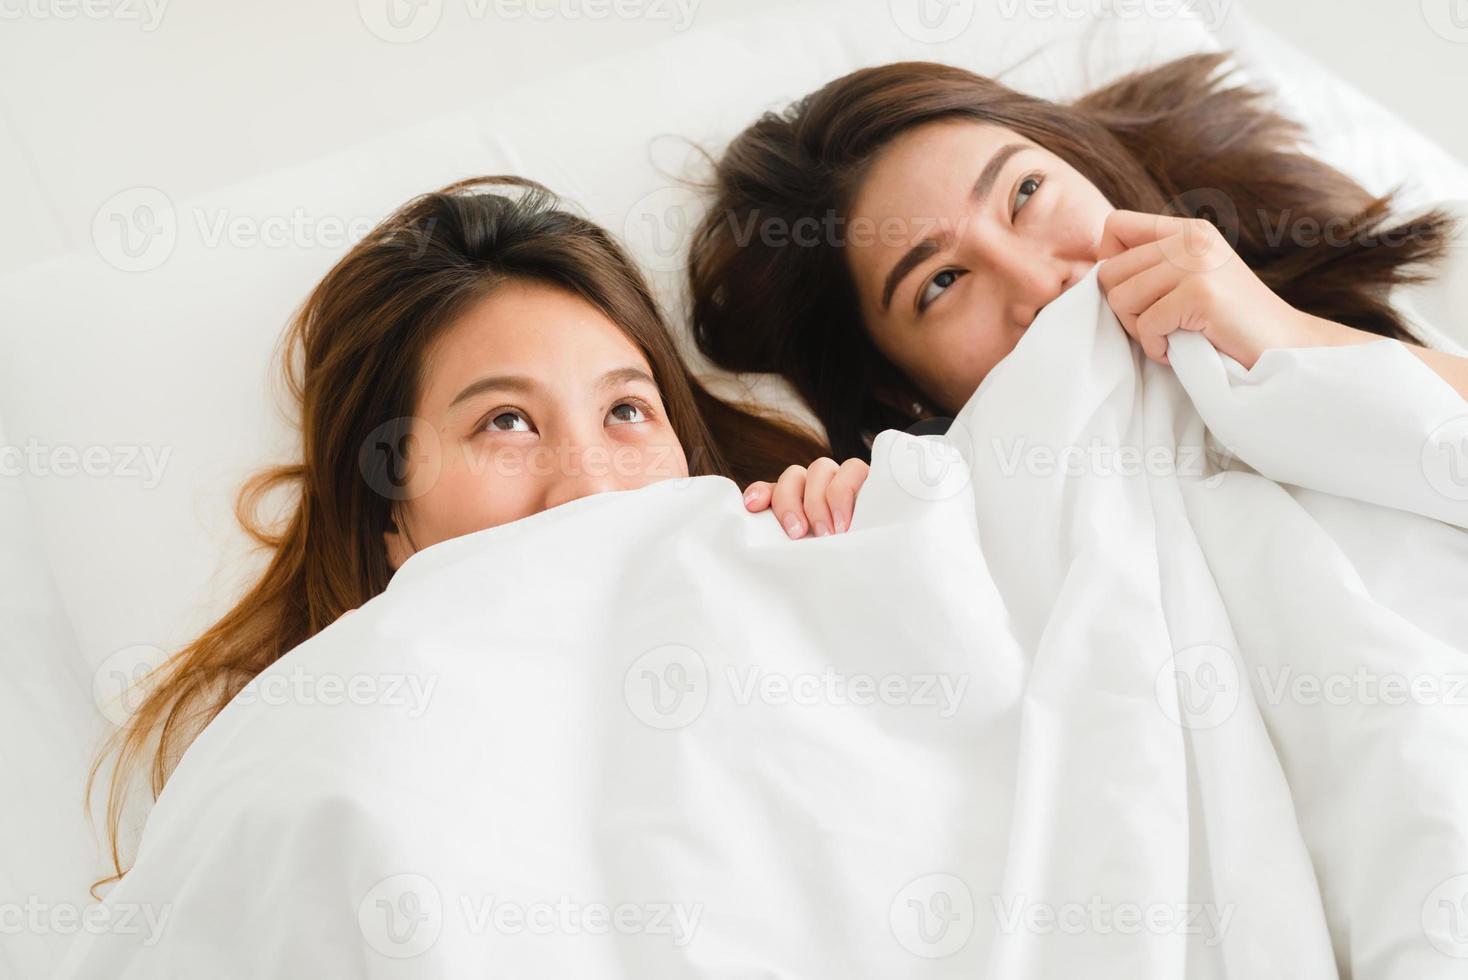 vista superior de belas jovens mulheres asiáticas lésbicas casal feliz mostrando surpresa e olhando para a câmera enquanto estava deitado na cama, debaixo do cobertor. mulheres engraçadas depois de acordar. conceito de casal lésbico juntos dentro de casa foto